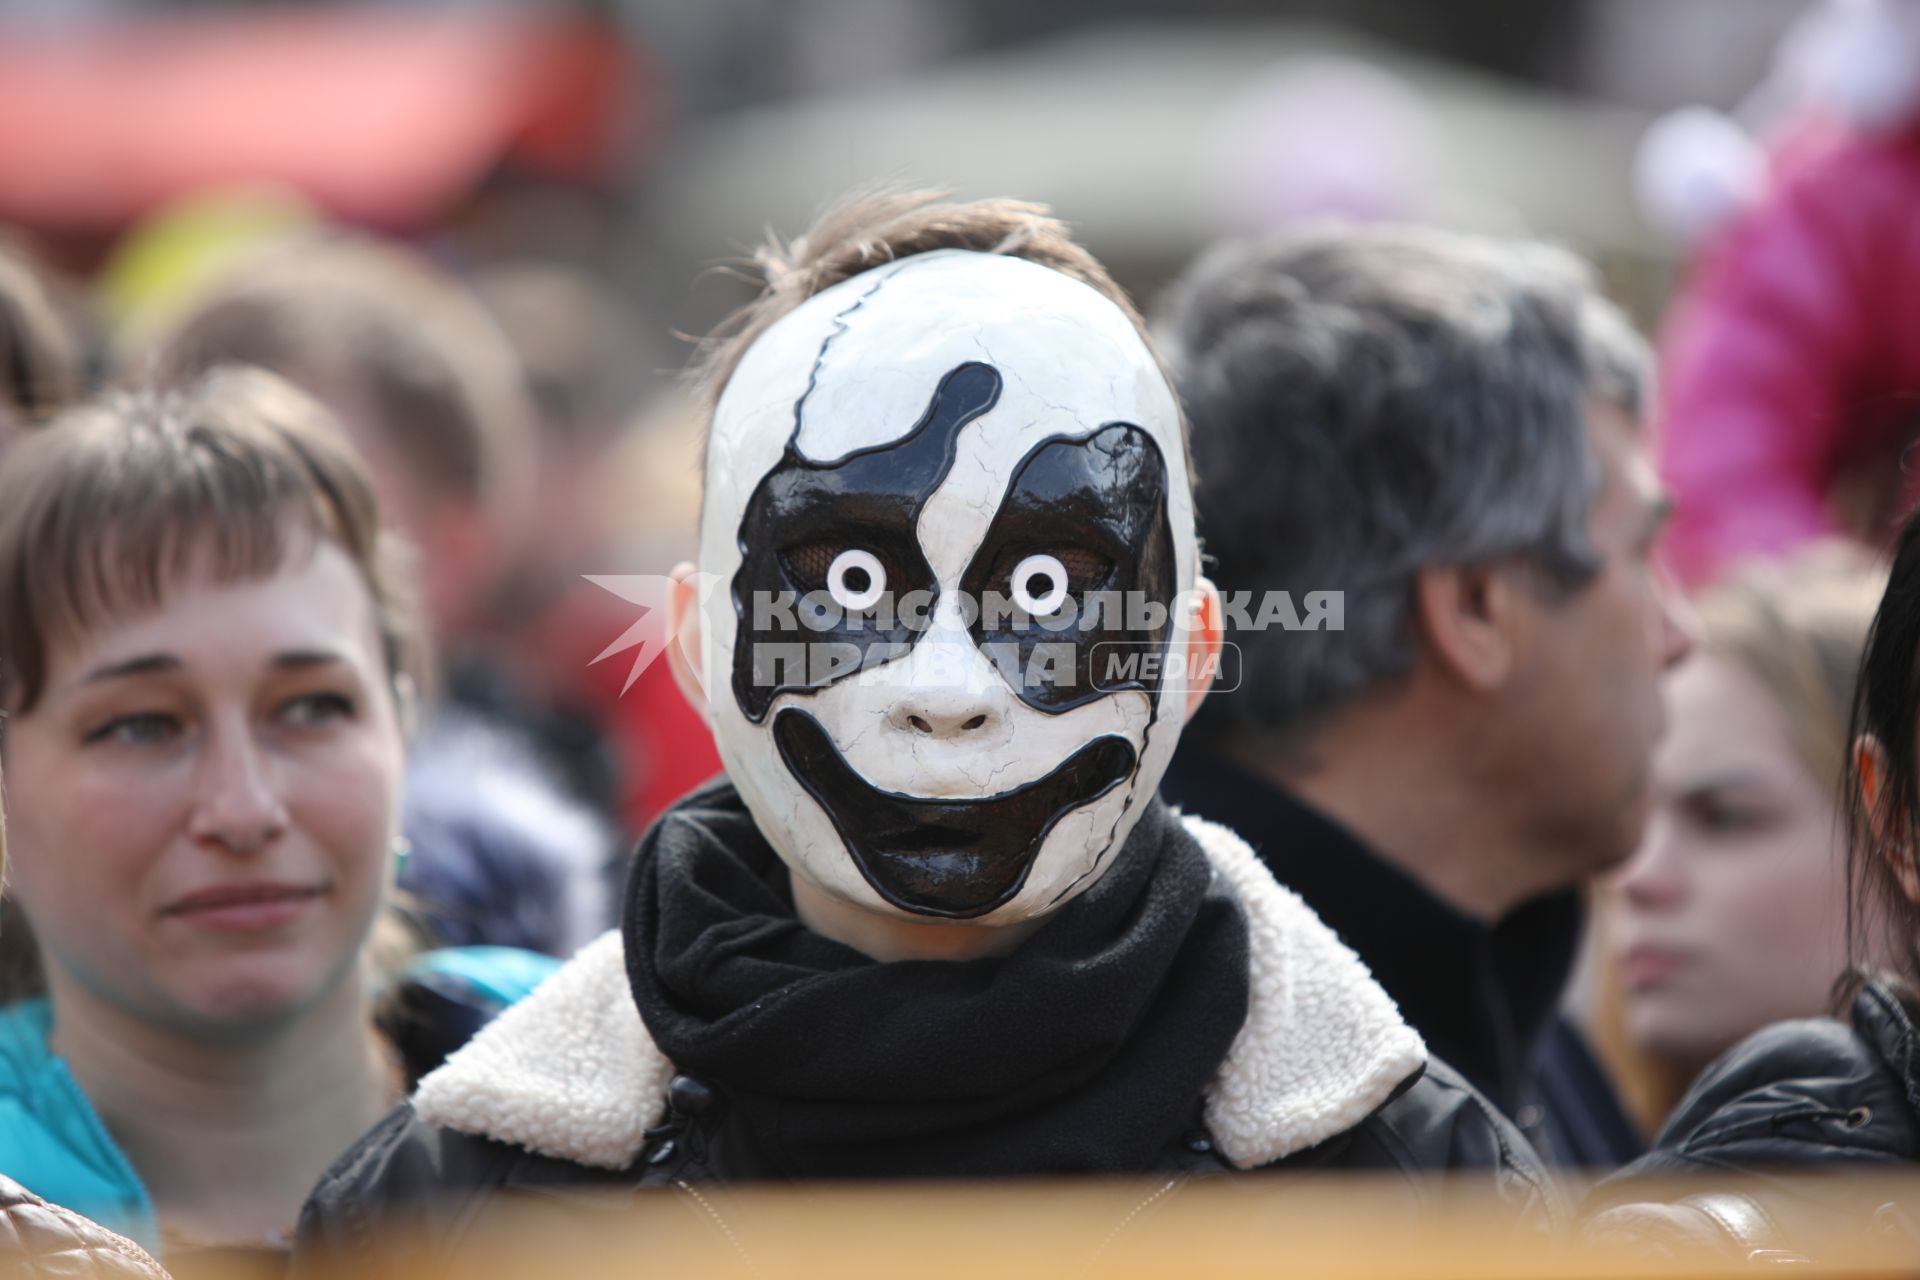 Ставрополь. Молодой человек в маске  во время масленичных гуляний.